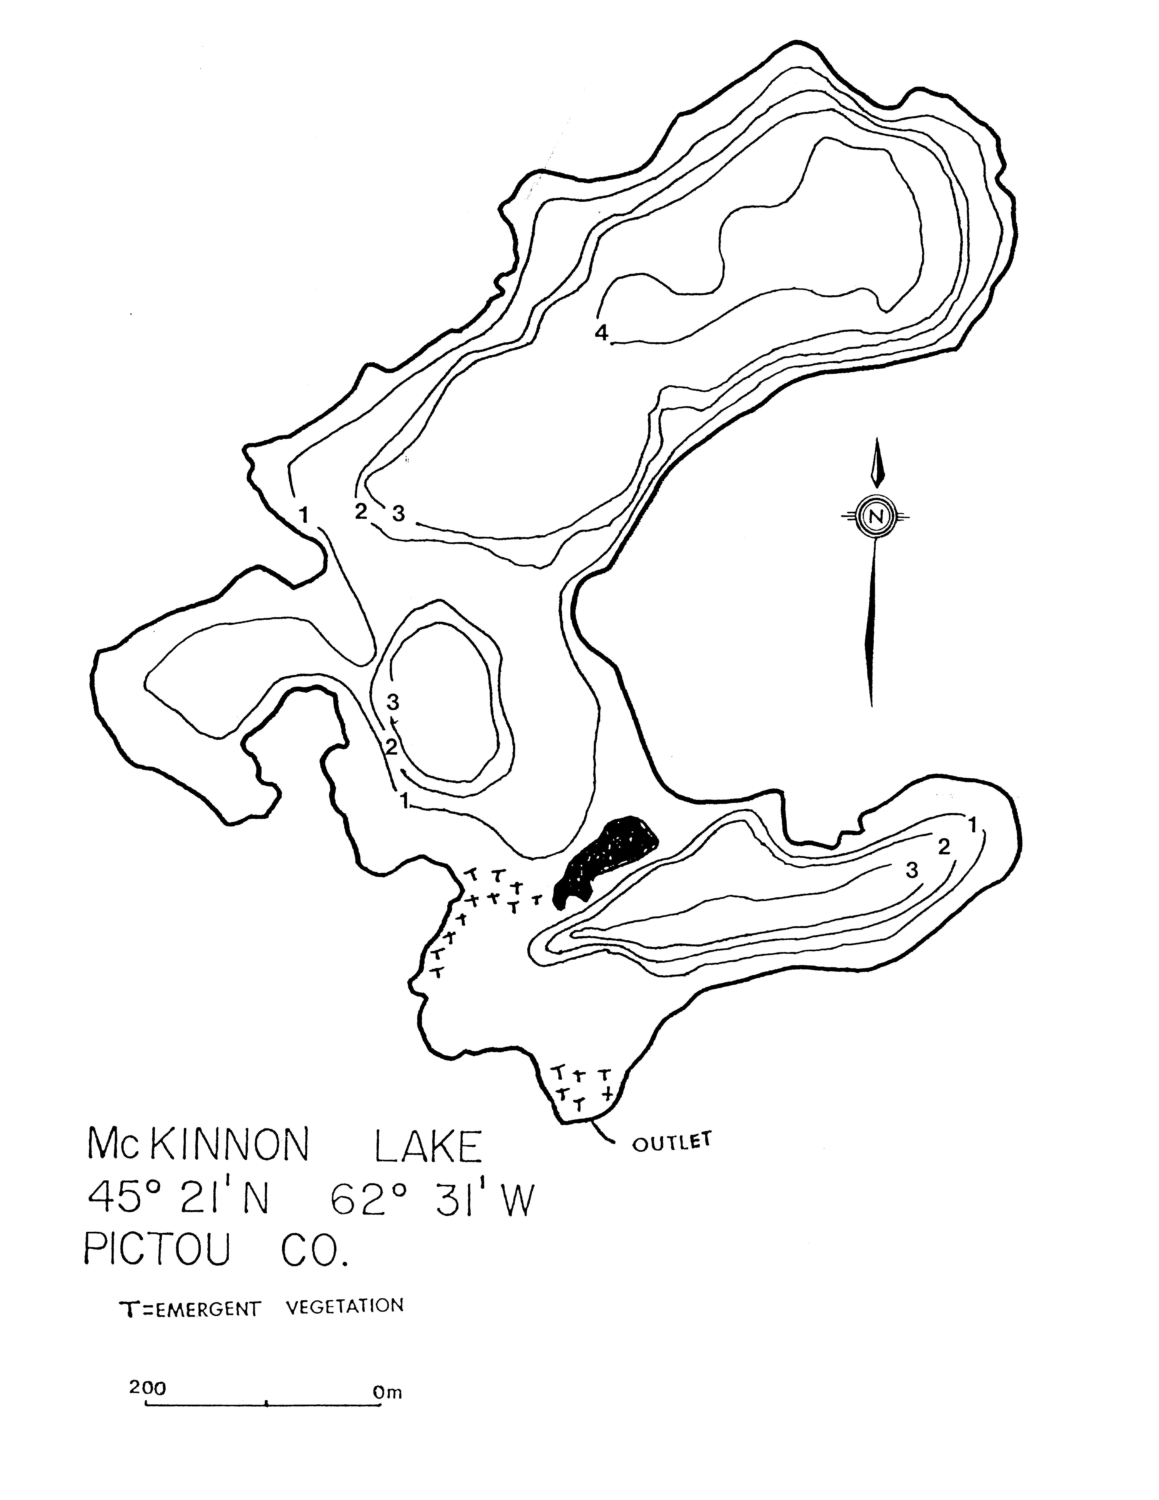 Mckinnon Lake - Pictou County Lake Maps